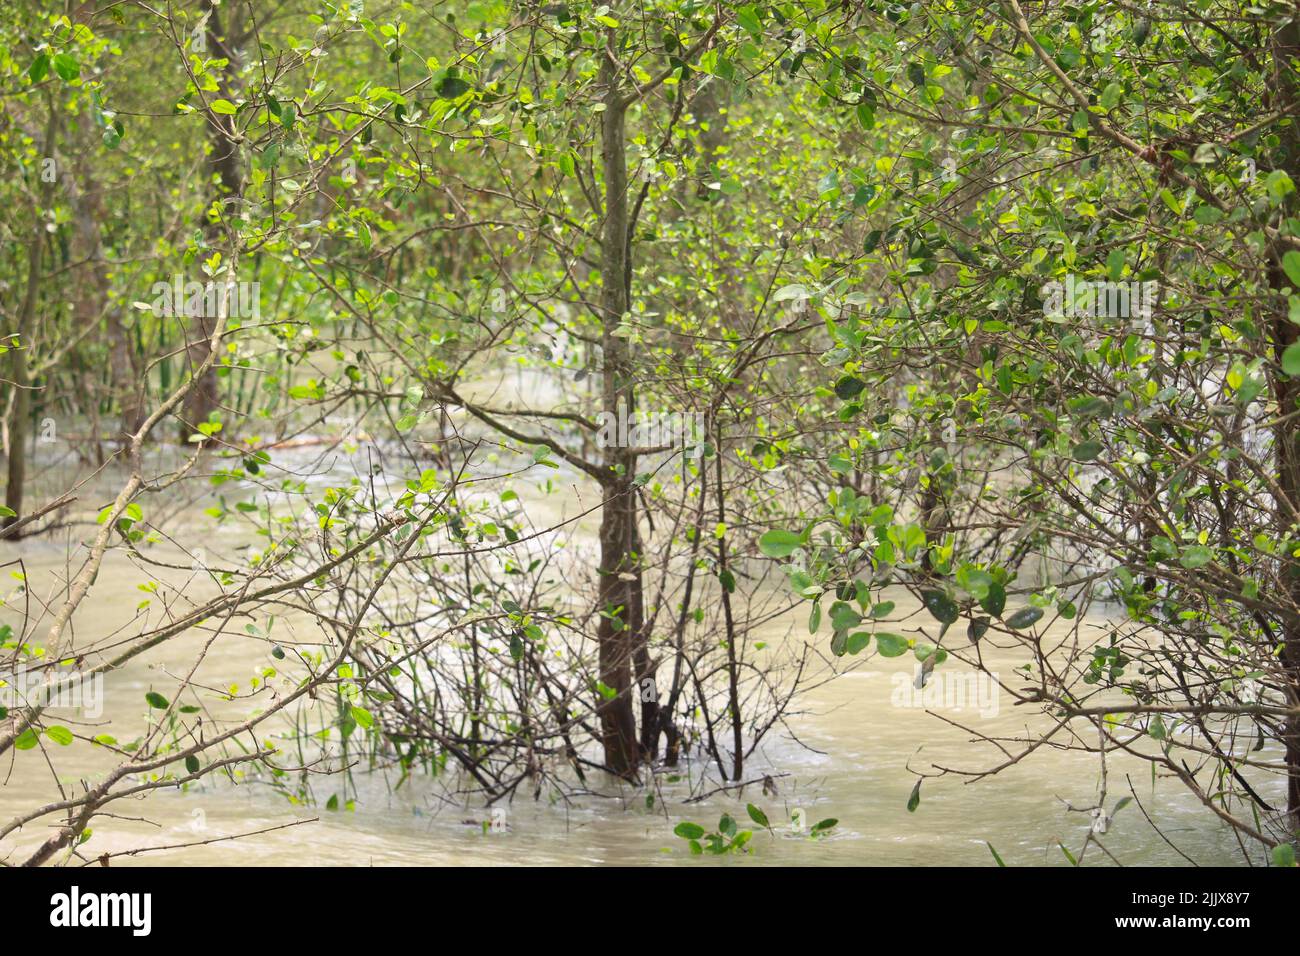 La maggior parte delle piante dei Sundarbans rimangono sotto acqua durante la stagione monsonica. Foto Stock